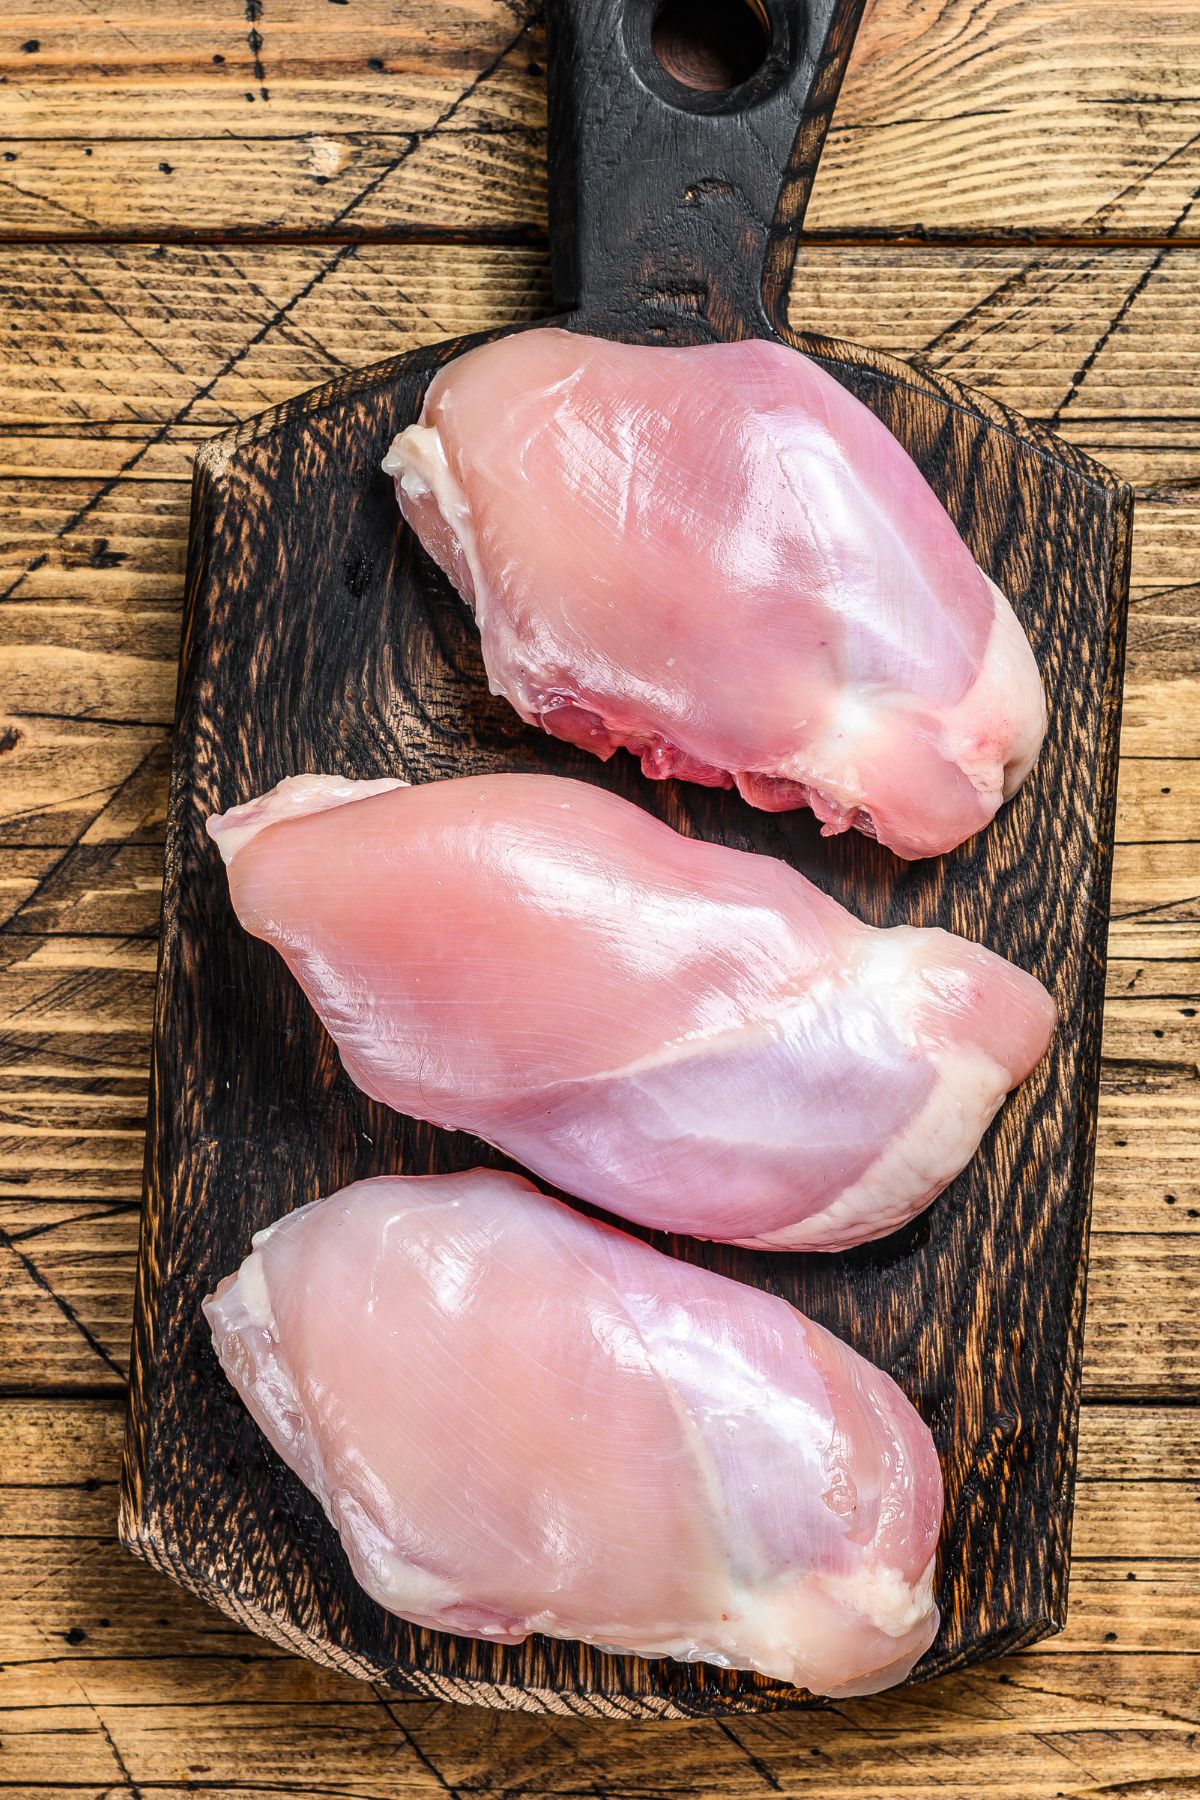 raw chicken on a cutting board.